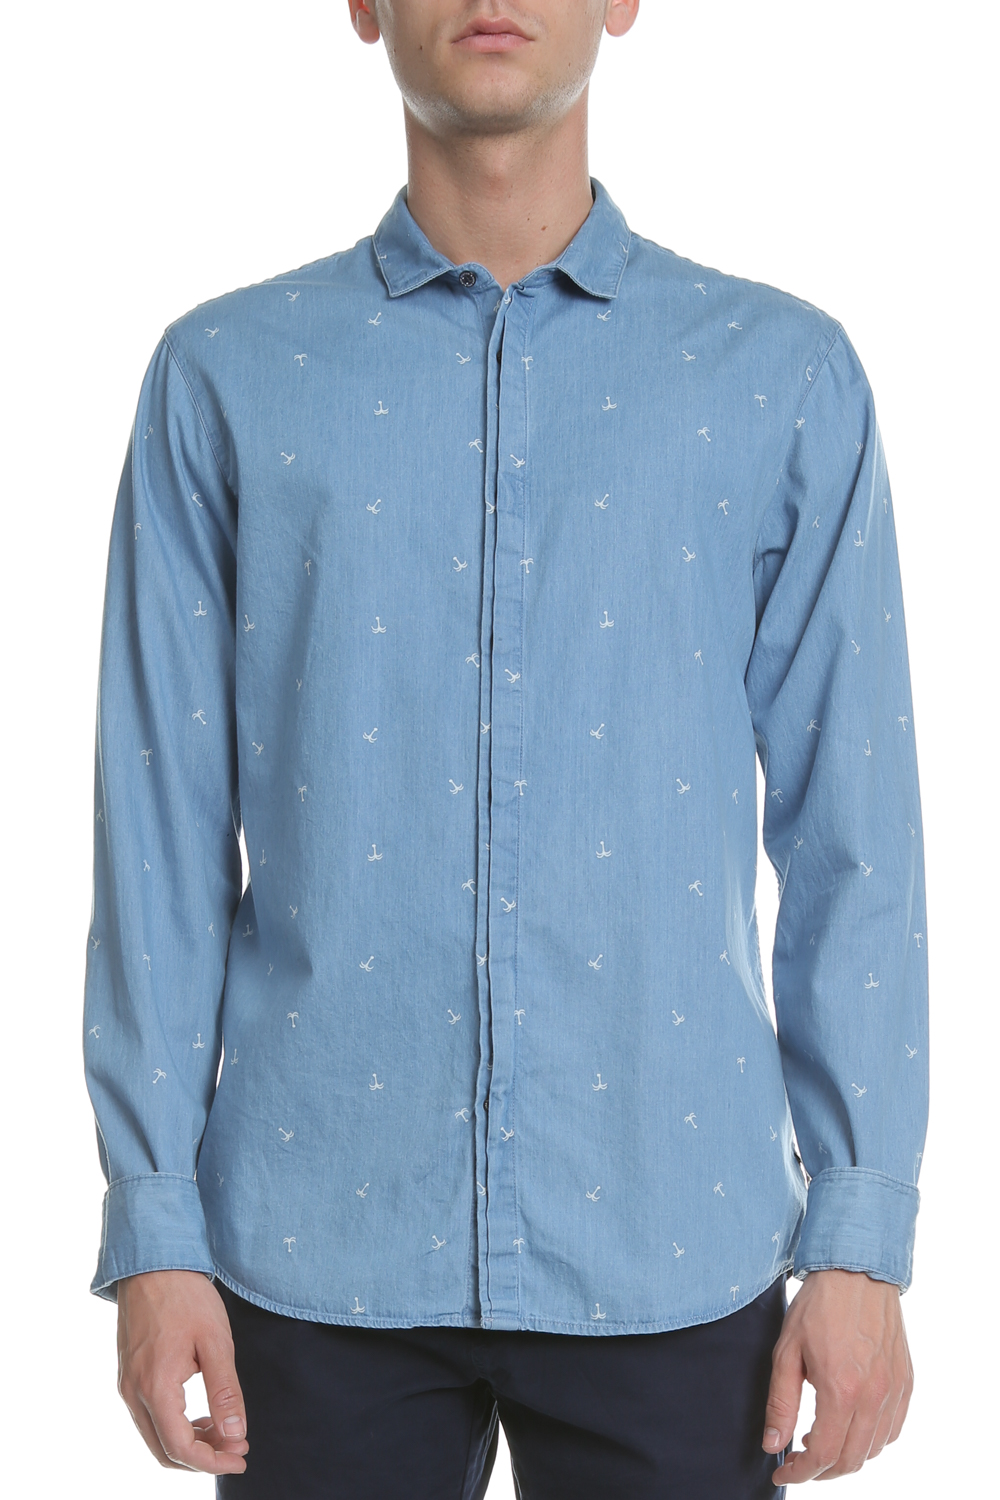 Ανδρικά/Ρούχα/Πουκάμισα/Μακρυμάνικα SCOTCH & SODA - Ανδρικό τζιν πουκάμισο SCOTCH & SODA Amsterdams Blauw γαλάζιο